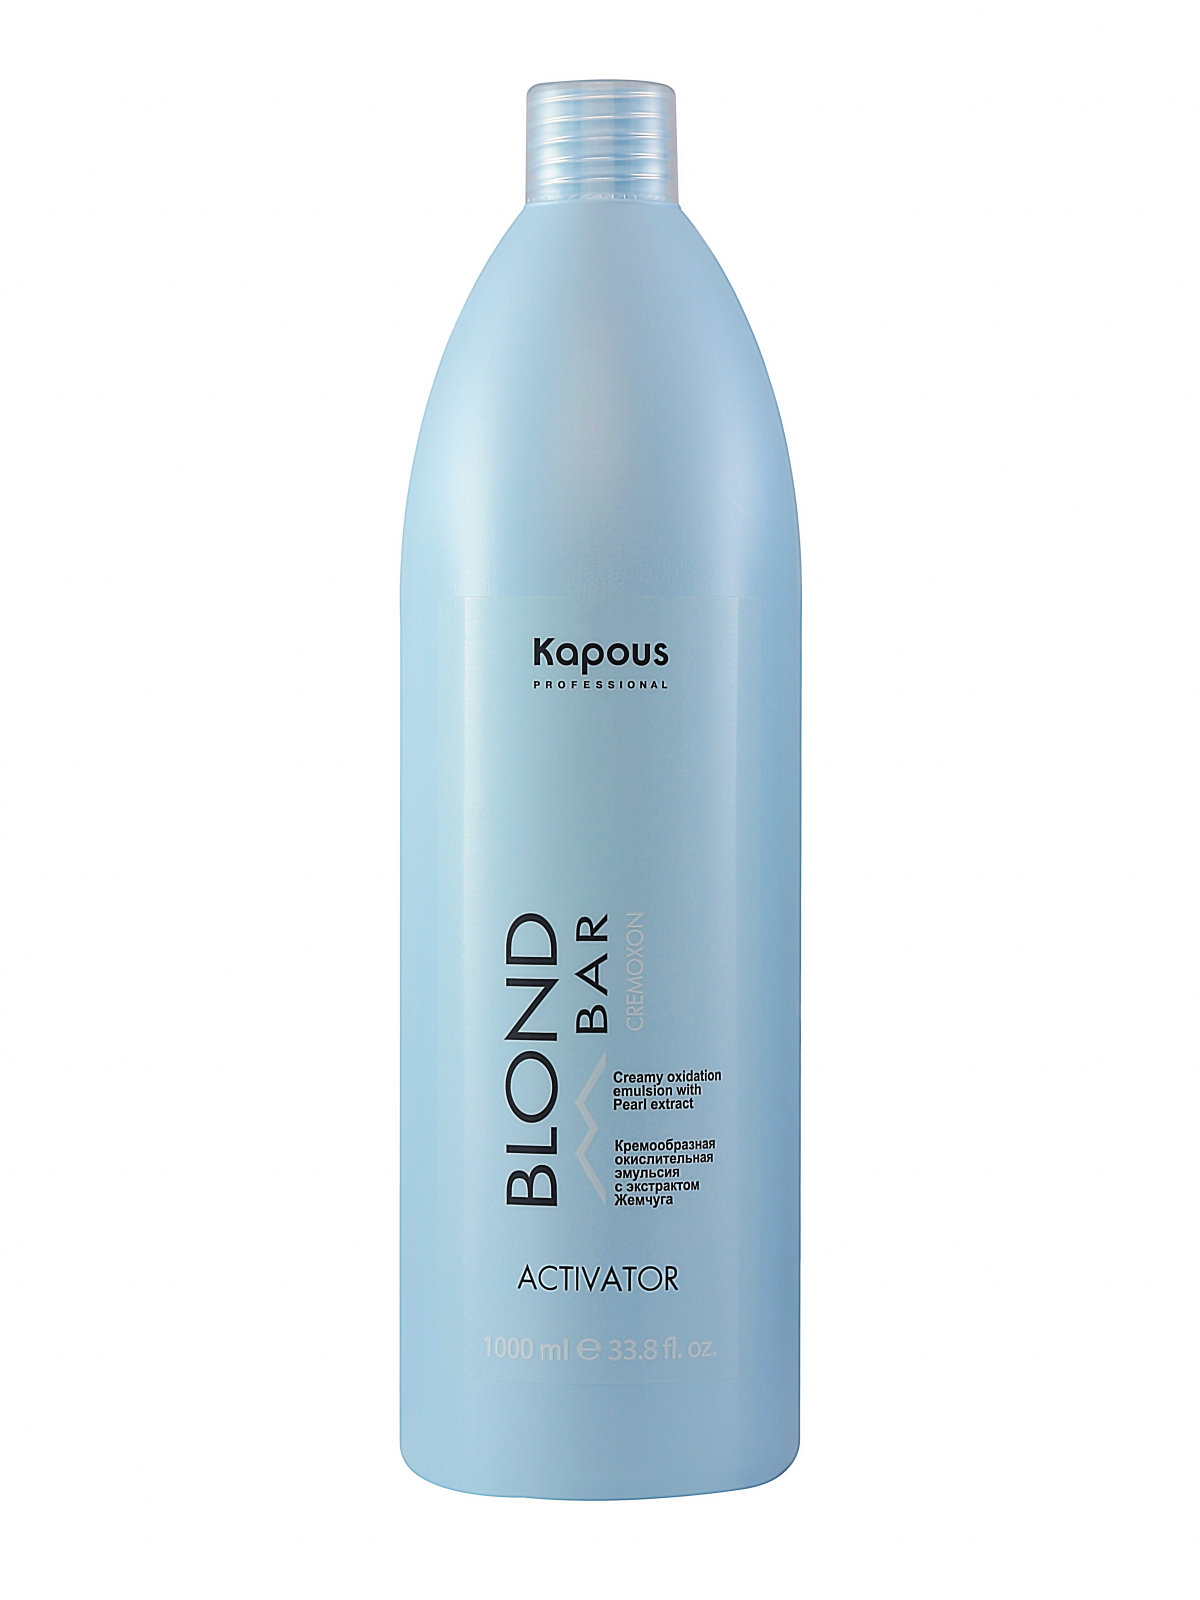 Активатор Kapous BLOND BAR для окрашивания волос 1000 мл серебристый шампунь для холодных оттенков блонд prima blond pb 1 p 1000 мл